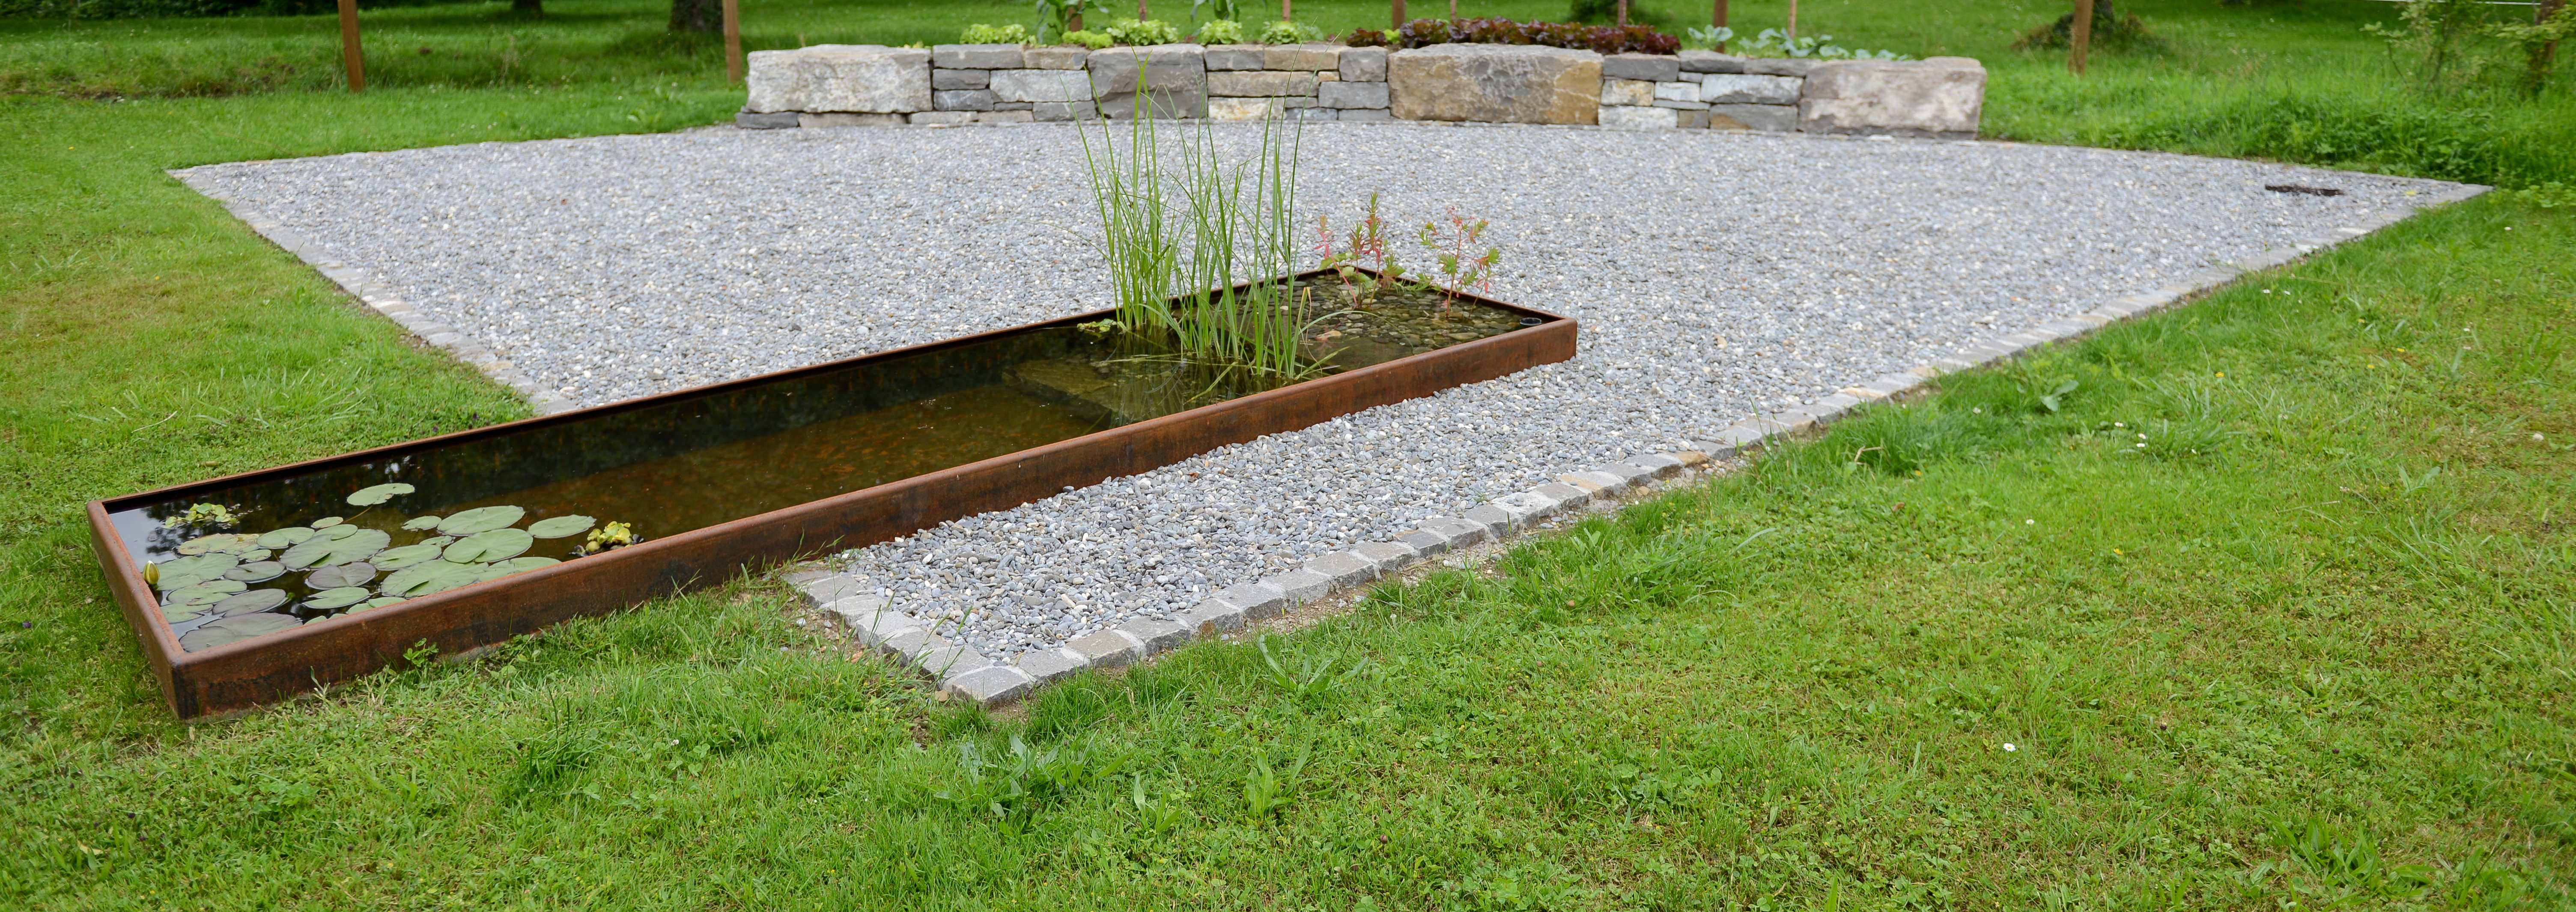 Rechteckiger Teich mit Cortenastahl als Randabschluss auf Rasen und rechteckiger Kiesfläche mit unterschiedlichen Steinabschlüssen